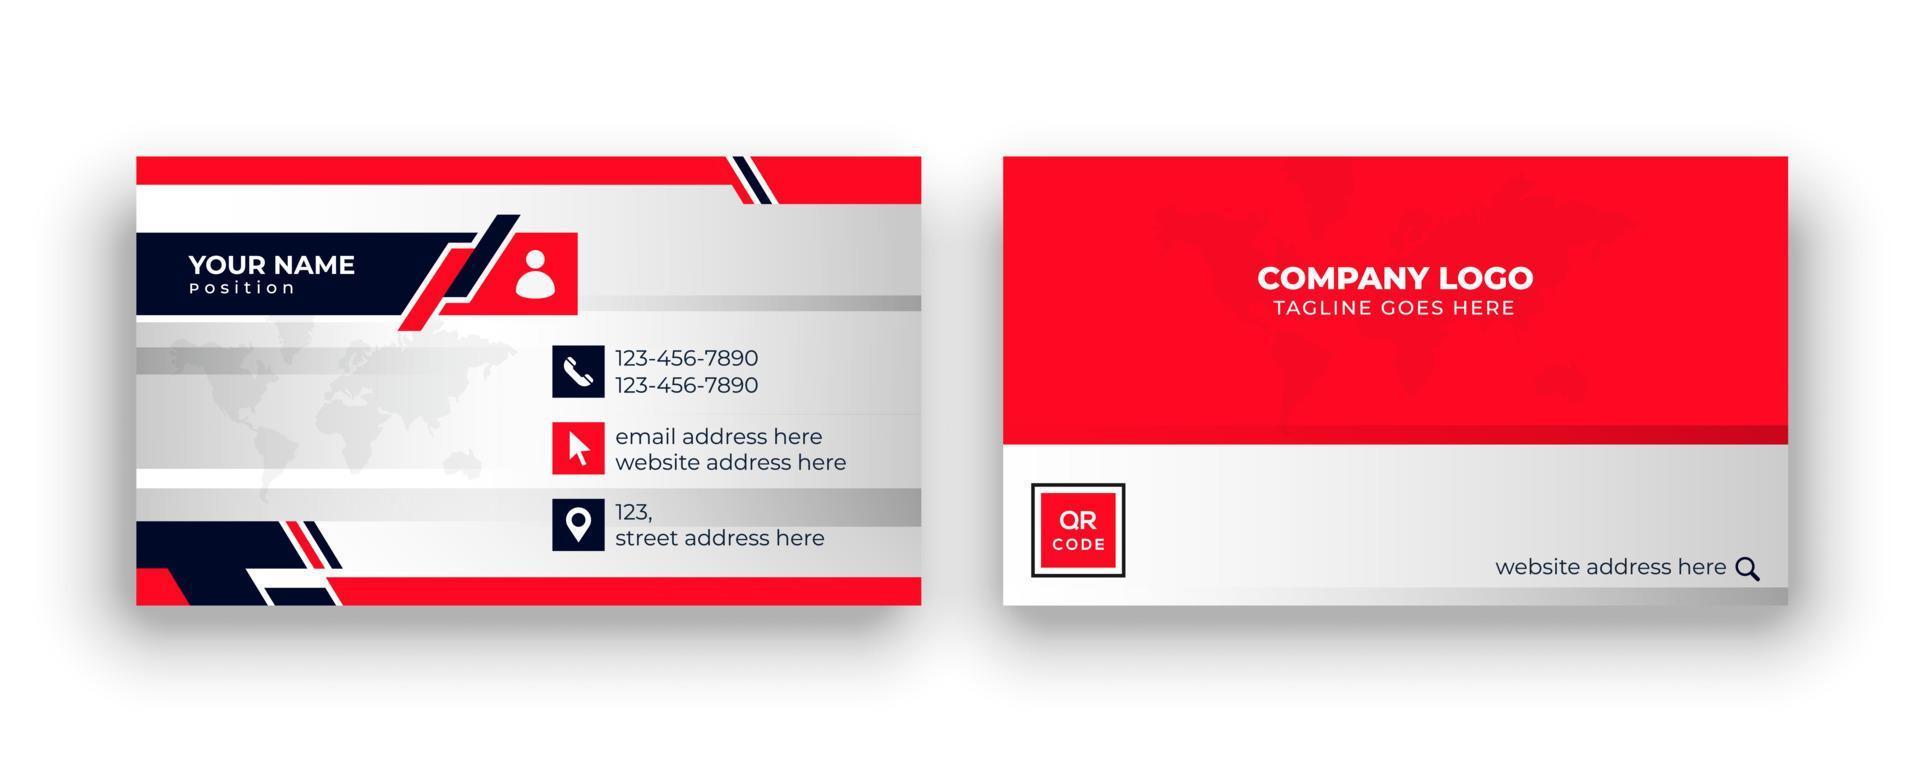 modello di biglietto da visita professionale e semplice. carta d'affari. biglietto da visita moderno con colore rosso e nero. vettore